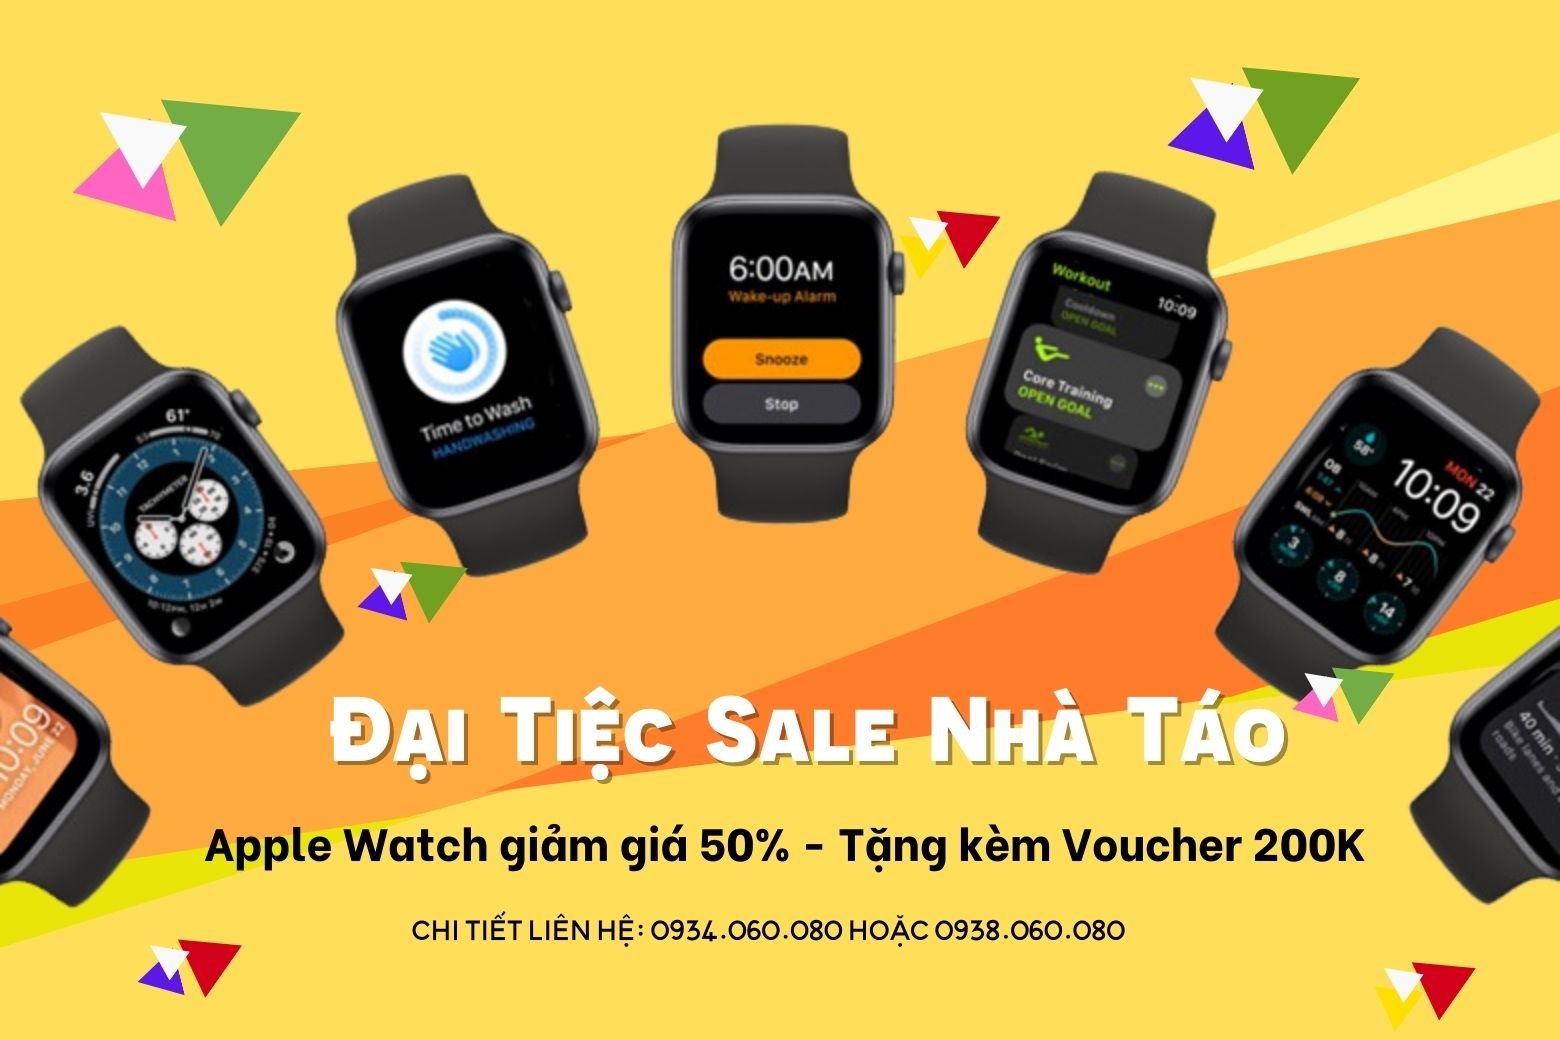 Đại tiệc sale nhà Táo: Apple Watch giảm giá 50% tặng kèm Voucher 200K